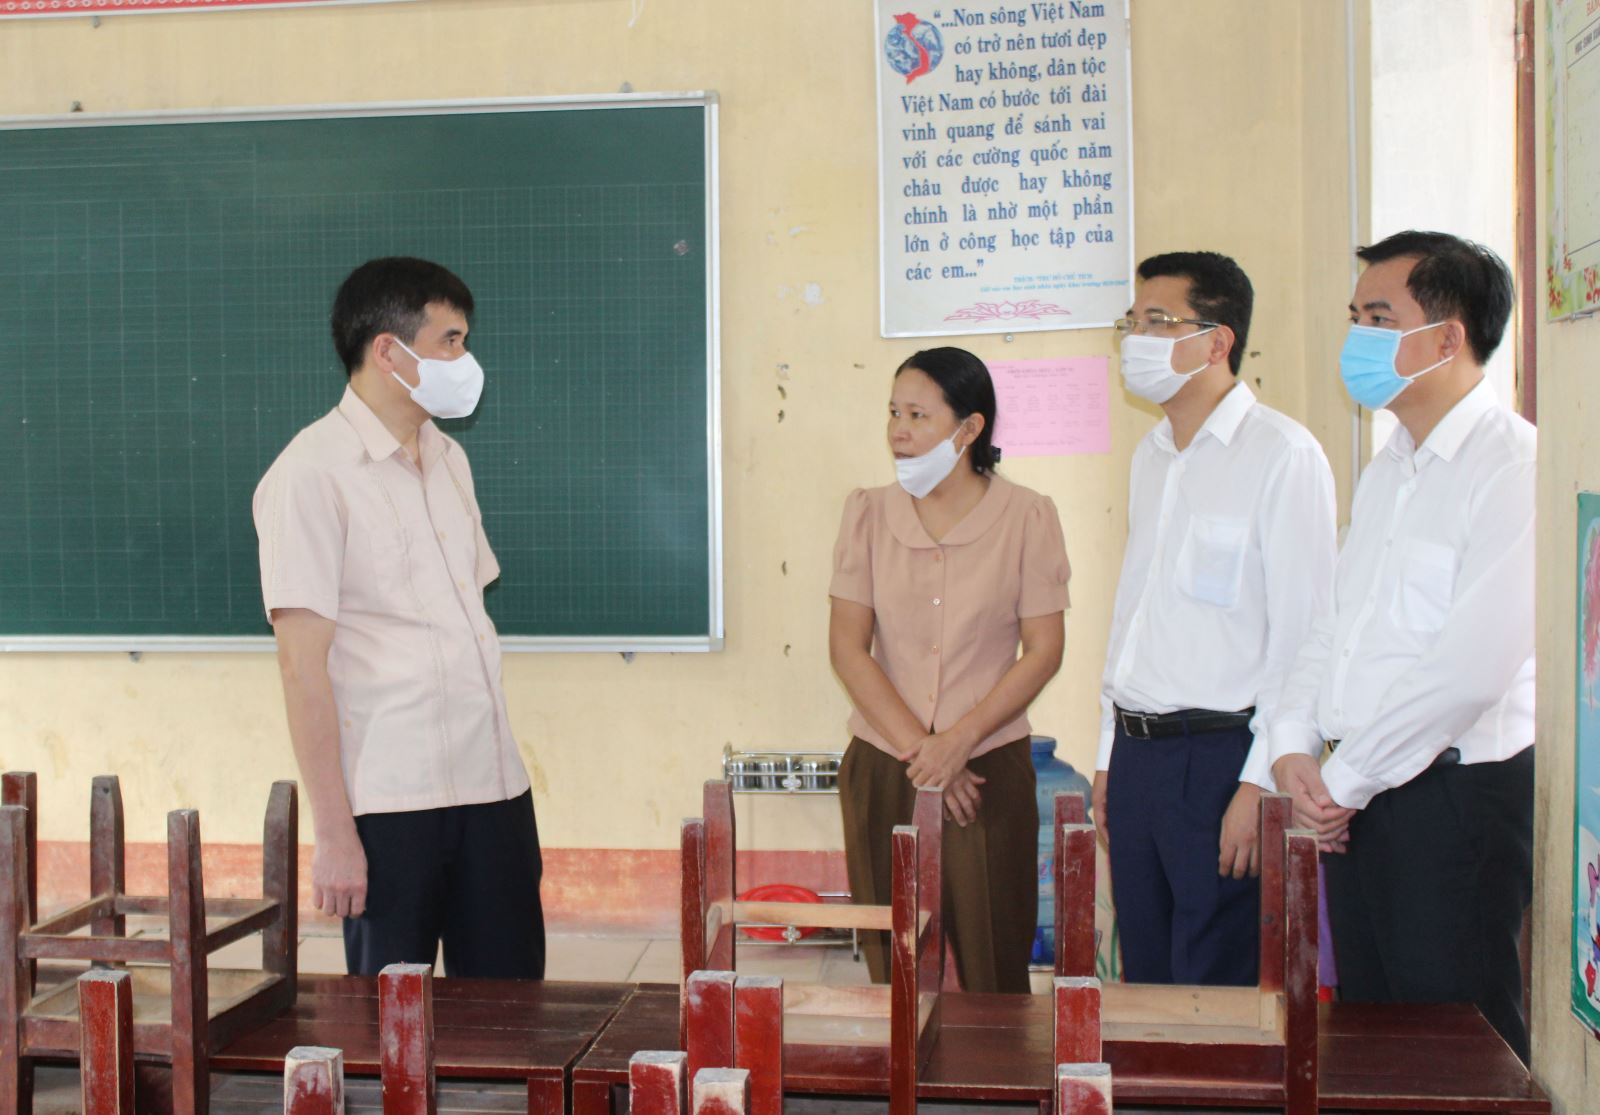 Đoàn công tác kiểm tra công tác phòng chông dịch tại trường tiểu học Hương Nộn